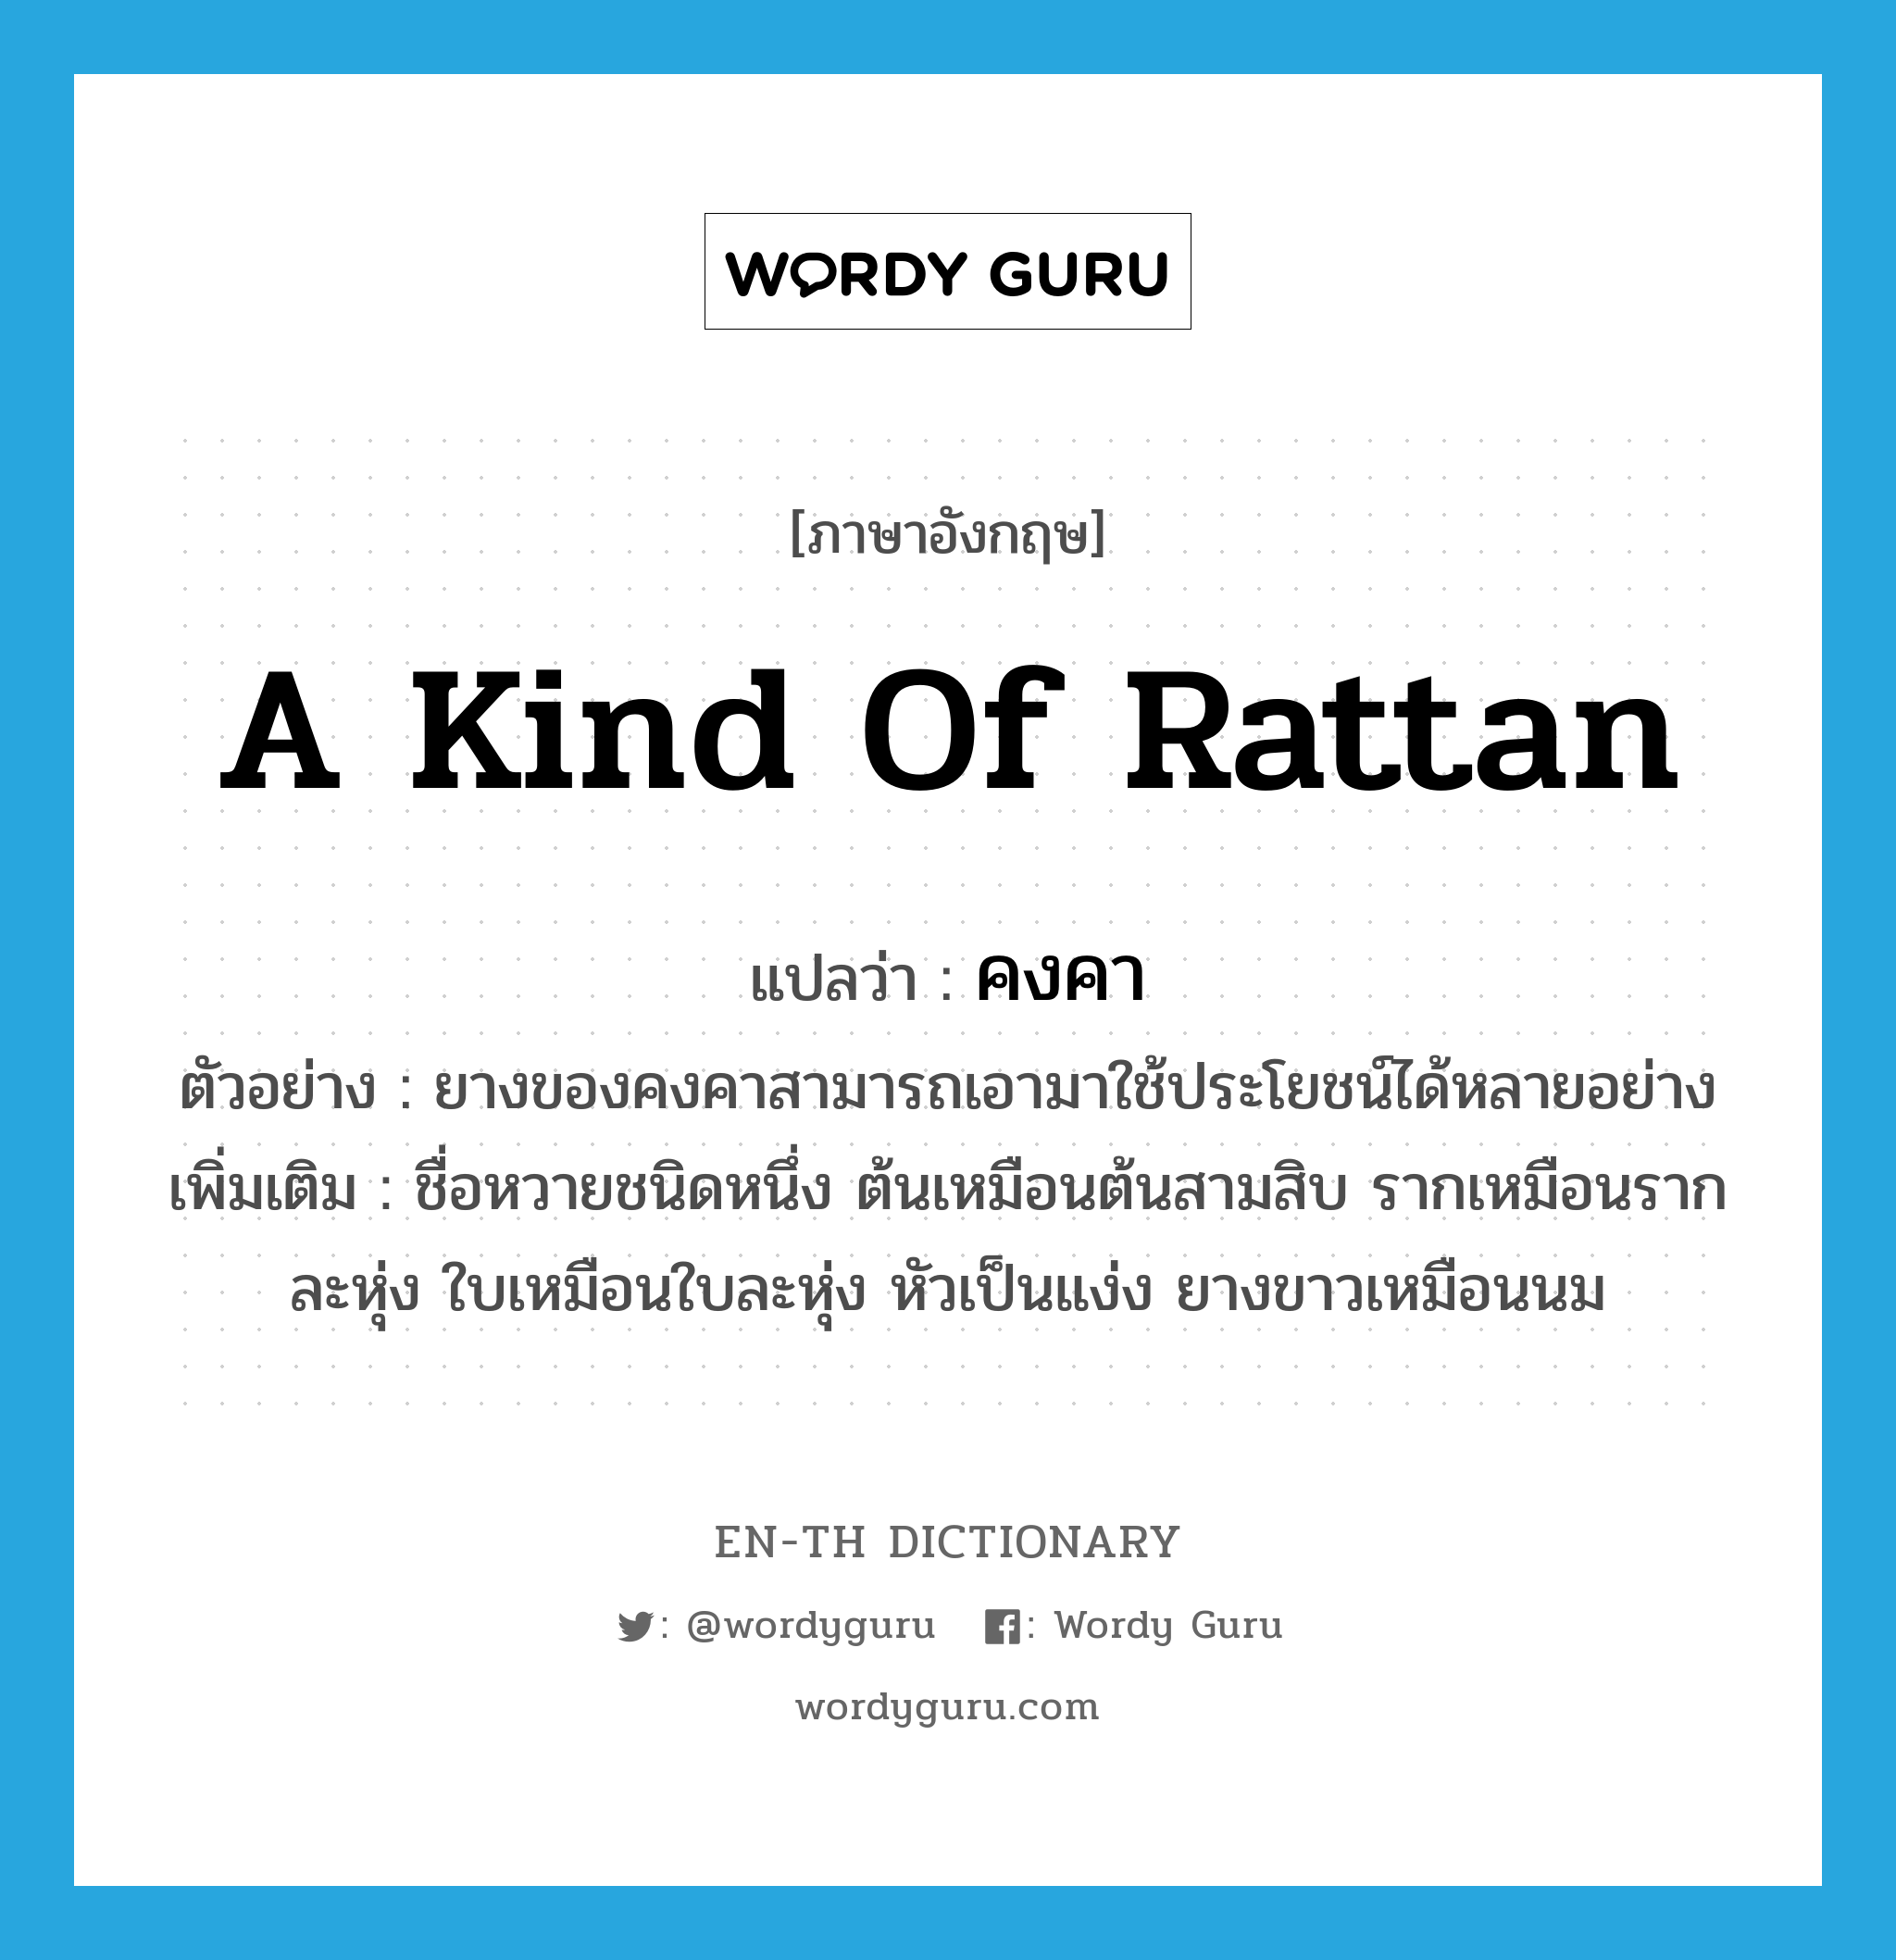 คงคา ภาษาอังกฤษ?, คำศัพท์ภาษาอังกฤษ คงคา แปลว่า a kind of rattan ประเภท N ตัวอย่าง ยางของคงคาสามารถเอามาใช้ประโยชน์ได้หลายอย่าง เพิ่มเติม ชื่อหวายชนิดหนึ่ง ต้นเหมือนต้นสามสิบ รากเหมือนรากละหุ่ง ใบเหมือนใบละหุ่ง หัวเป็นแง่ง ยางขาวเหมือนนม หมวด N